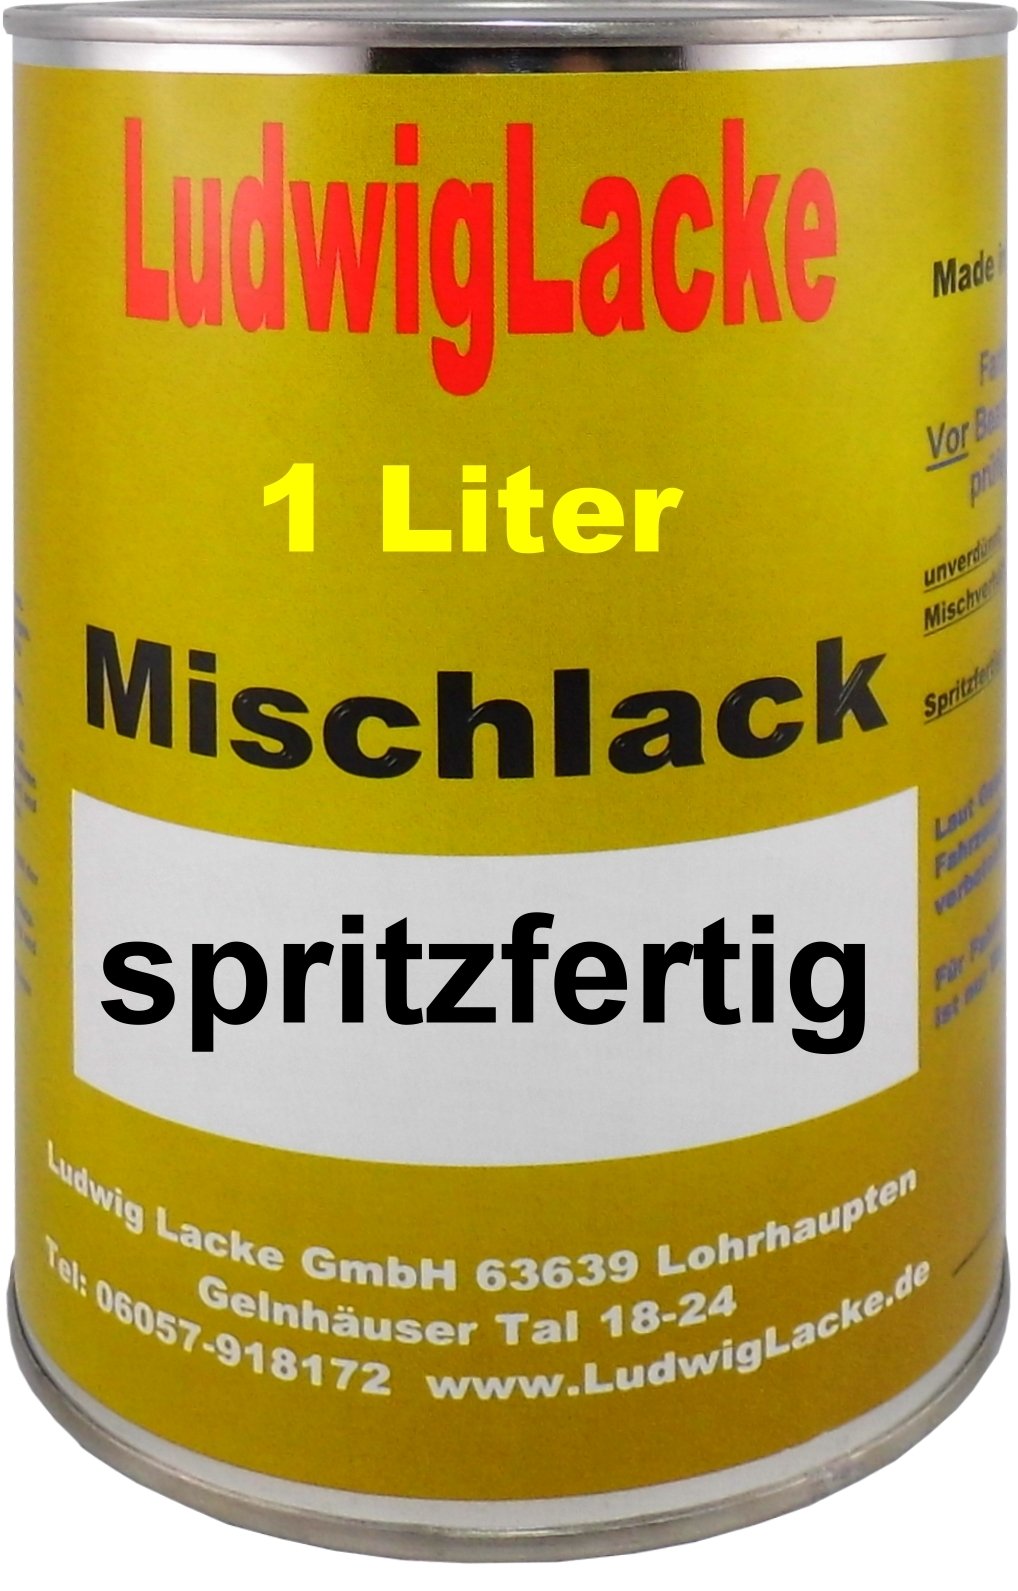 Ludwig Lacke 1 Liter spritzfertiger Autolack für FIAT Grigio Moon Perleffekt 671 Bj.98-04 von Ludwiglacke